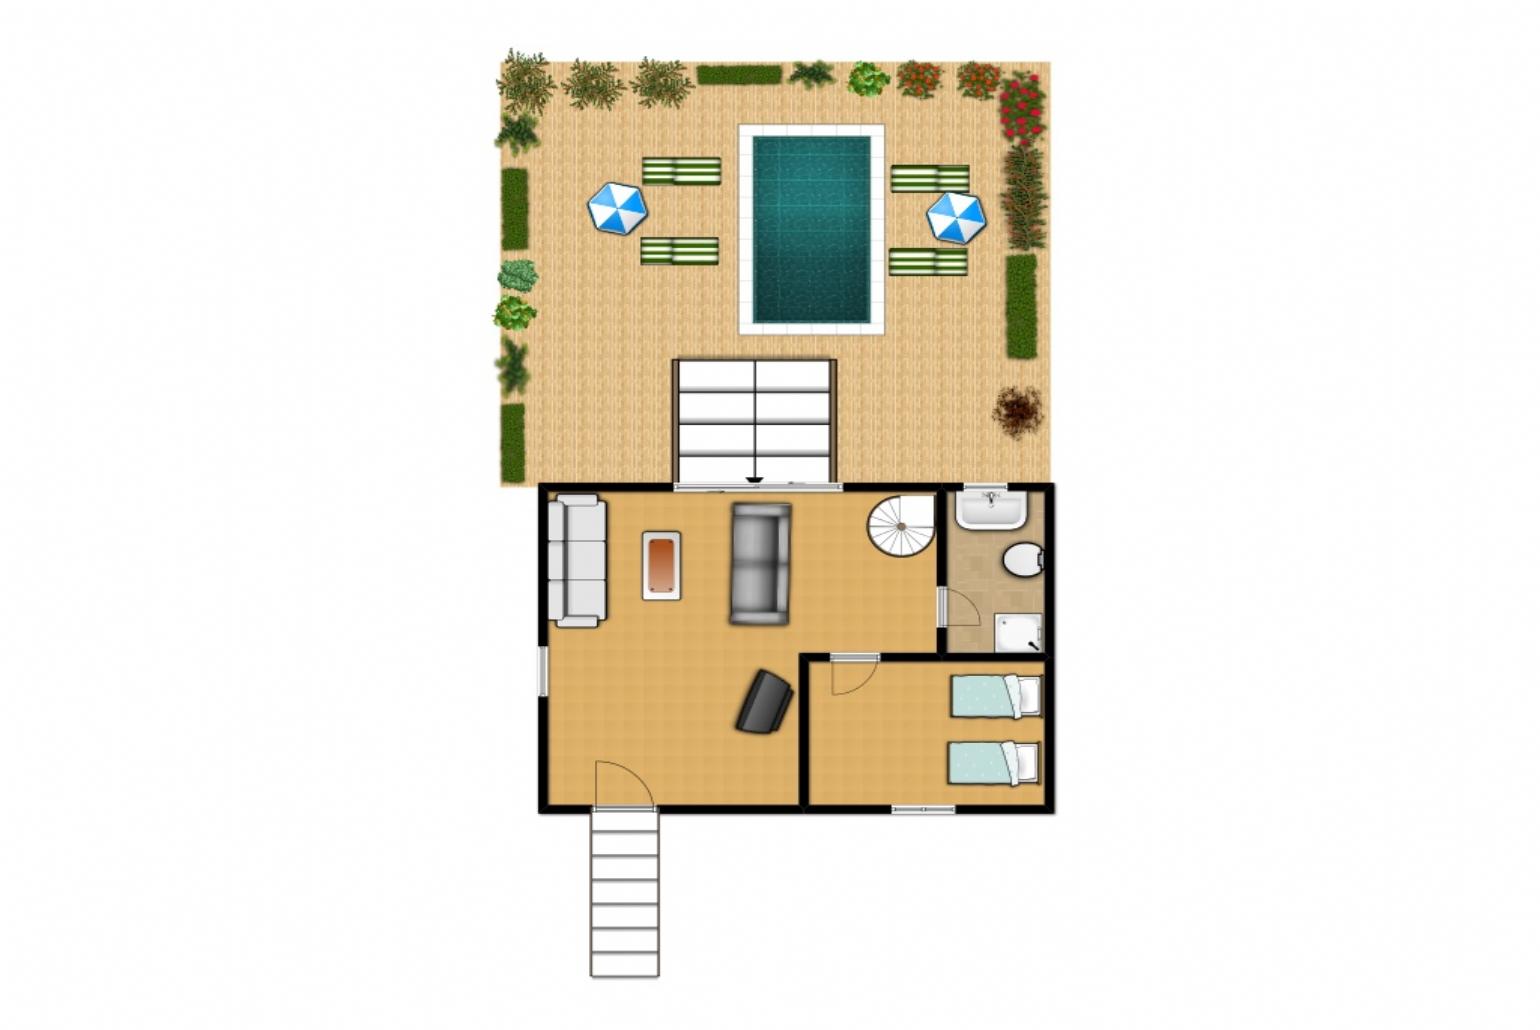 Floor Plan: Ground Floor